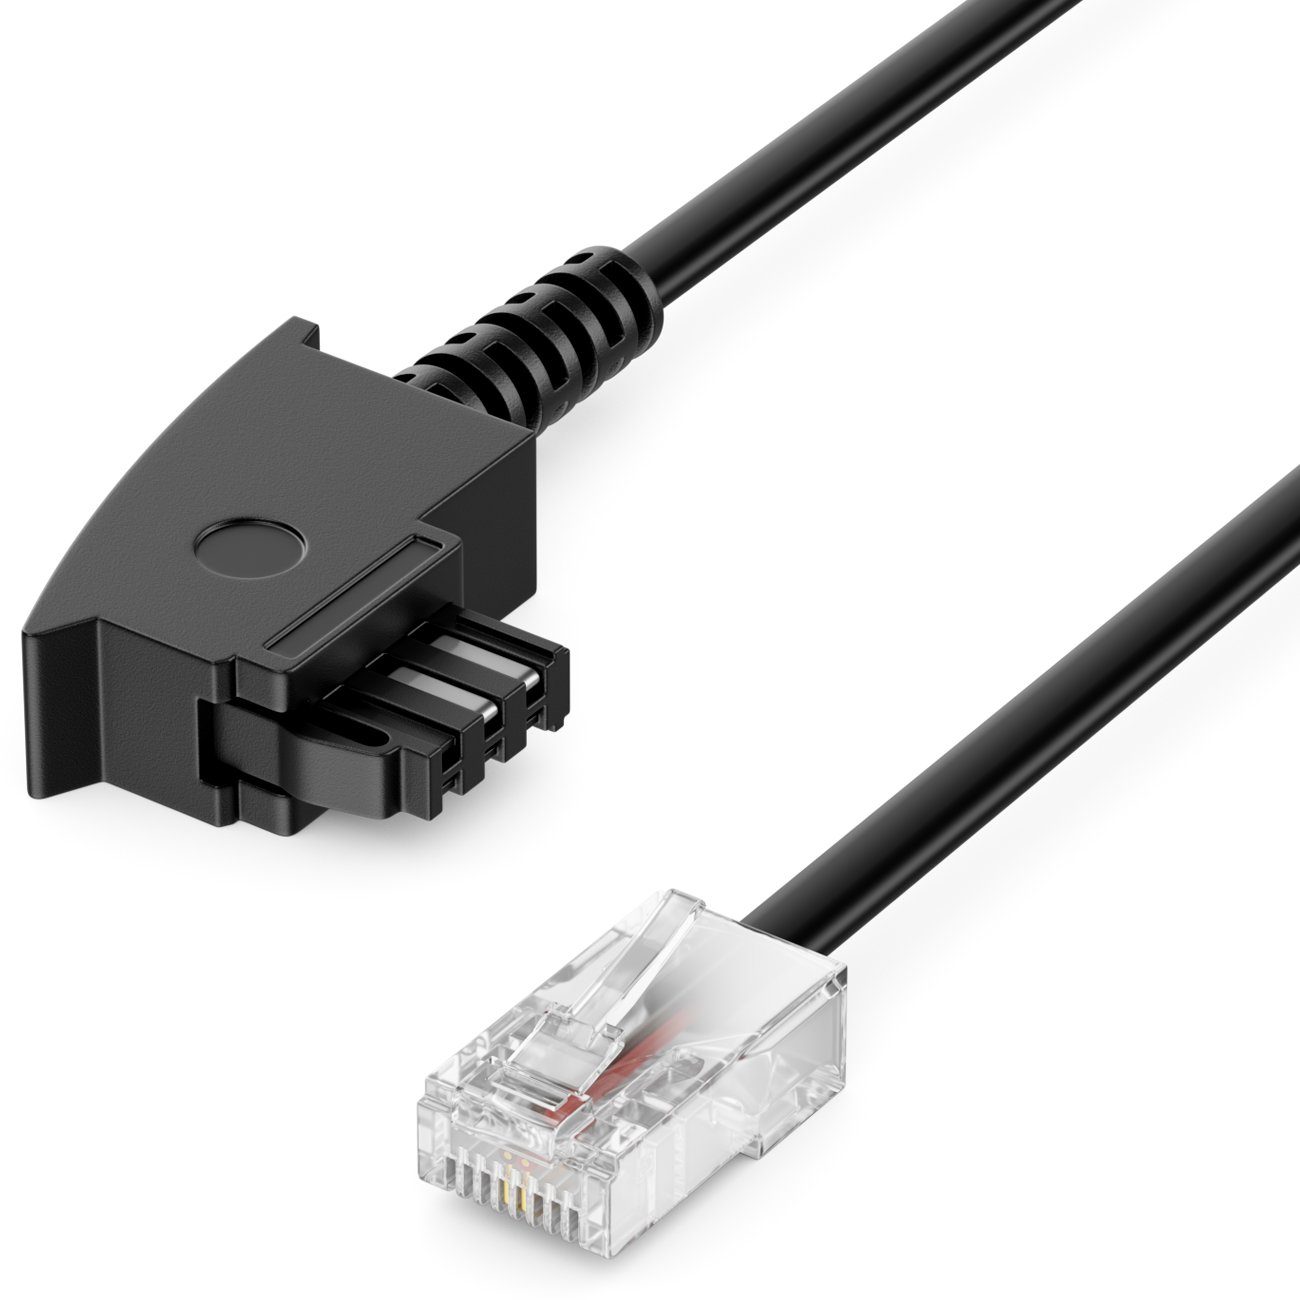 deleyCON deleyCON 2m TAE Anschlusskabel Routerkabel TAE-F auf RJ45 Stecker  DSL LAN-Kabel, Kompatibel zu Modem, DSL-Router, ADSL-Router, VDSL-Router  bis 100Mbit/s